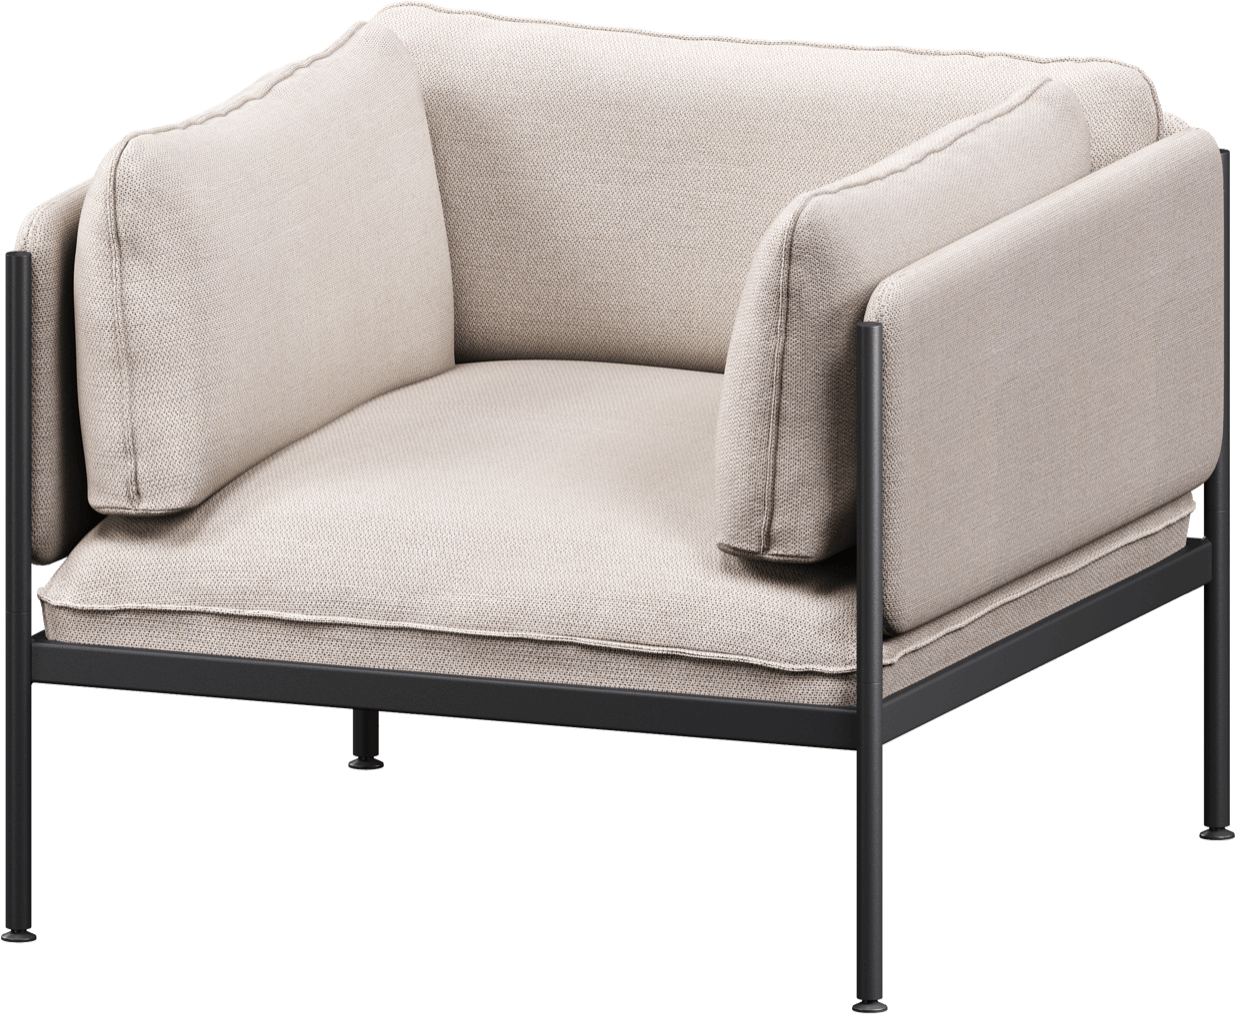 Toom Modular Sessel in Oatmilk Beige  präsentiert im Onlineshop von KAQTU Design AG. Sessel mit Armlehnen ist von Noo.ma